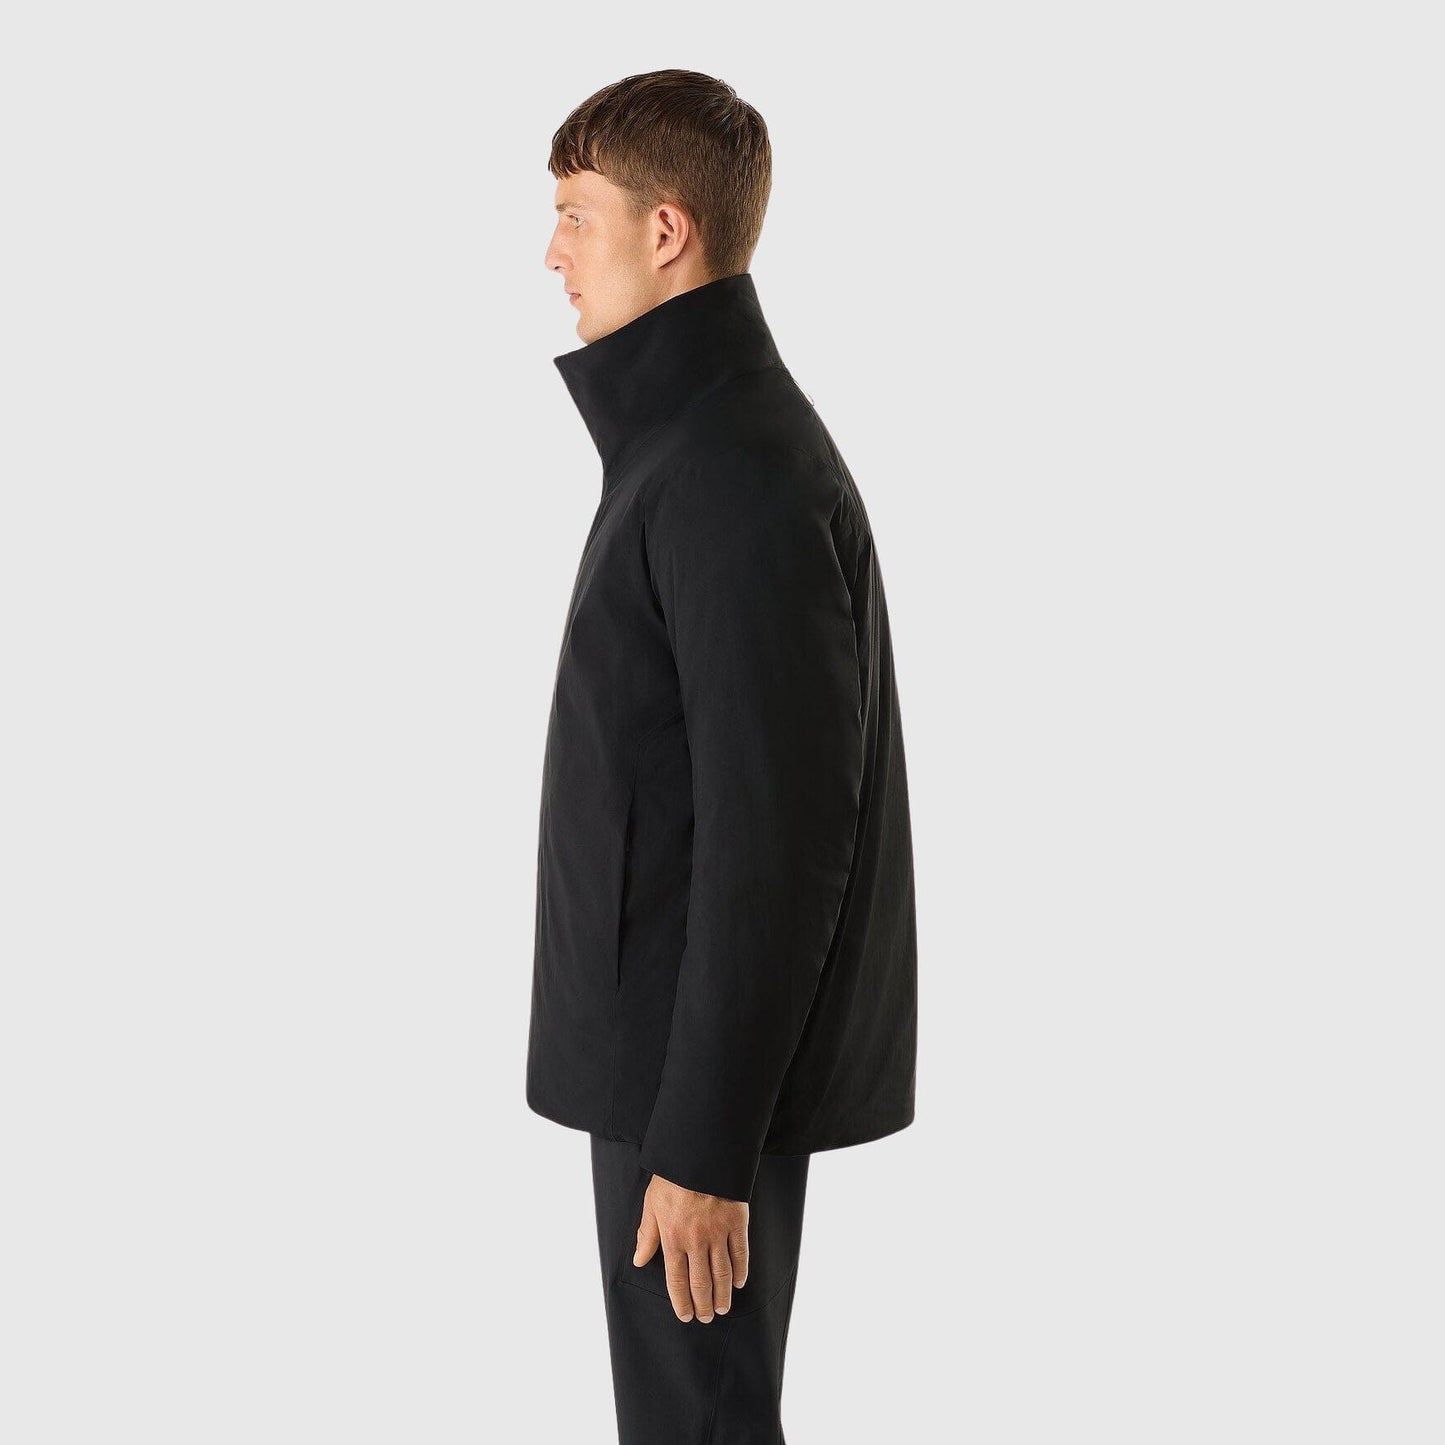 Veilance Euler Insulated Jacket - Black Jacket Veilance 